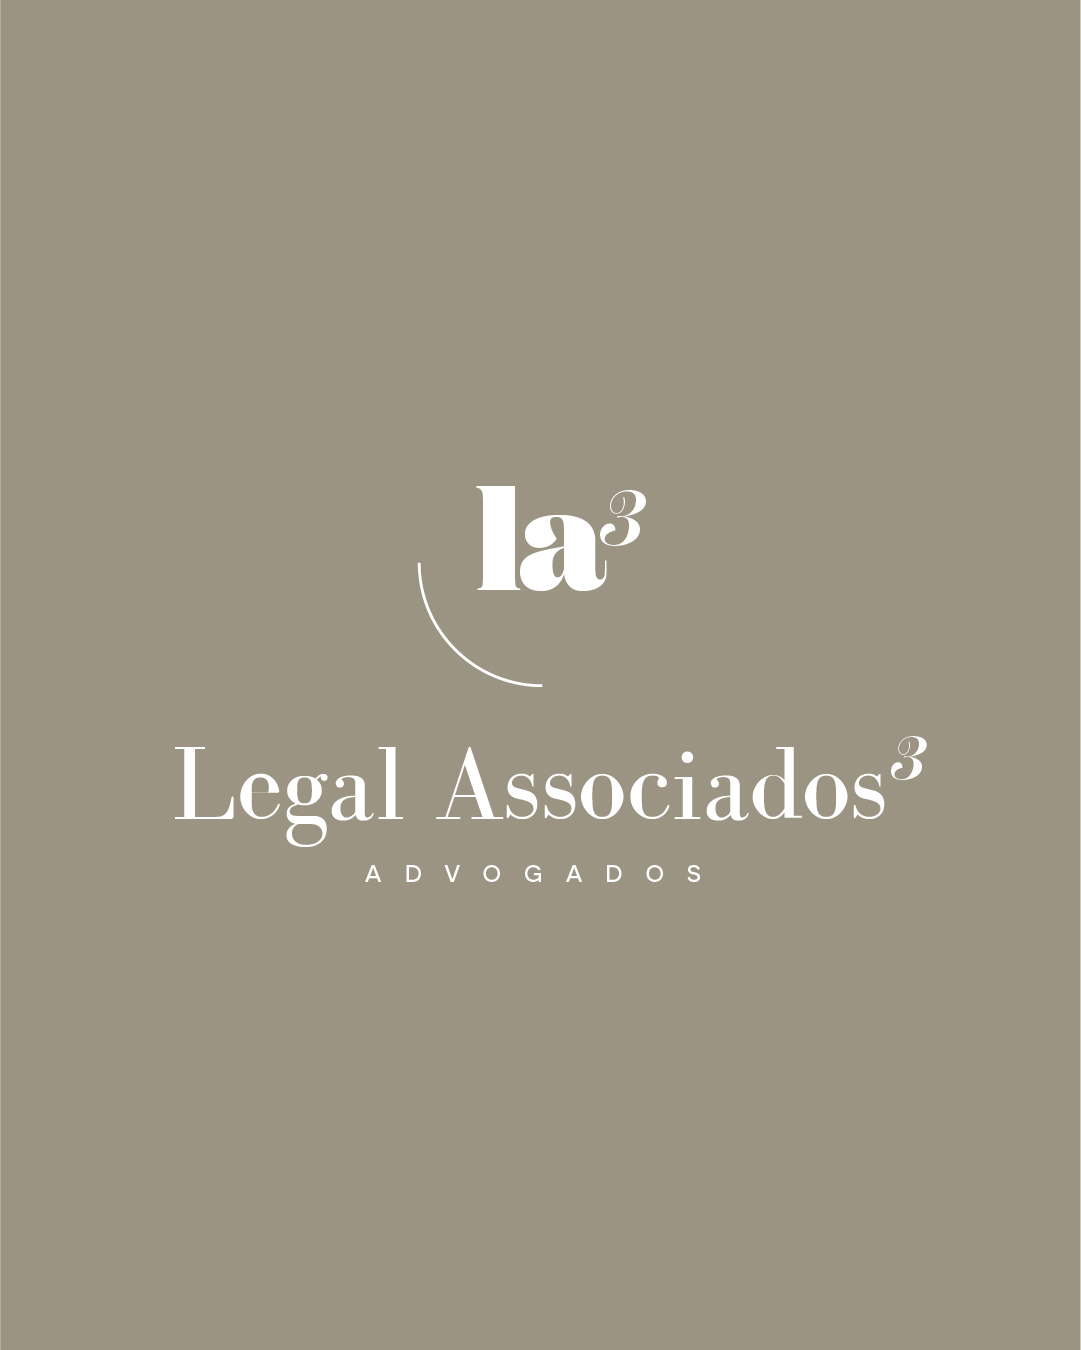 Legal-Associados-3-design-logotipo-1